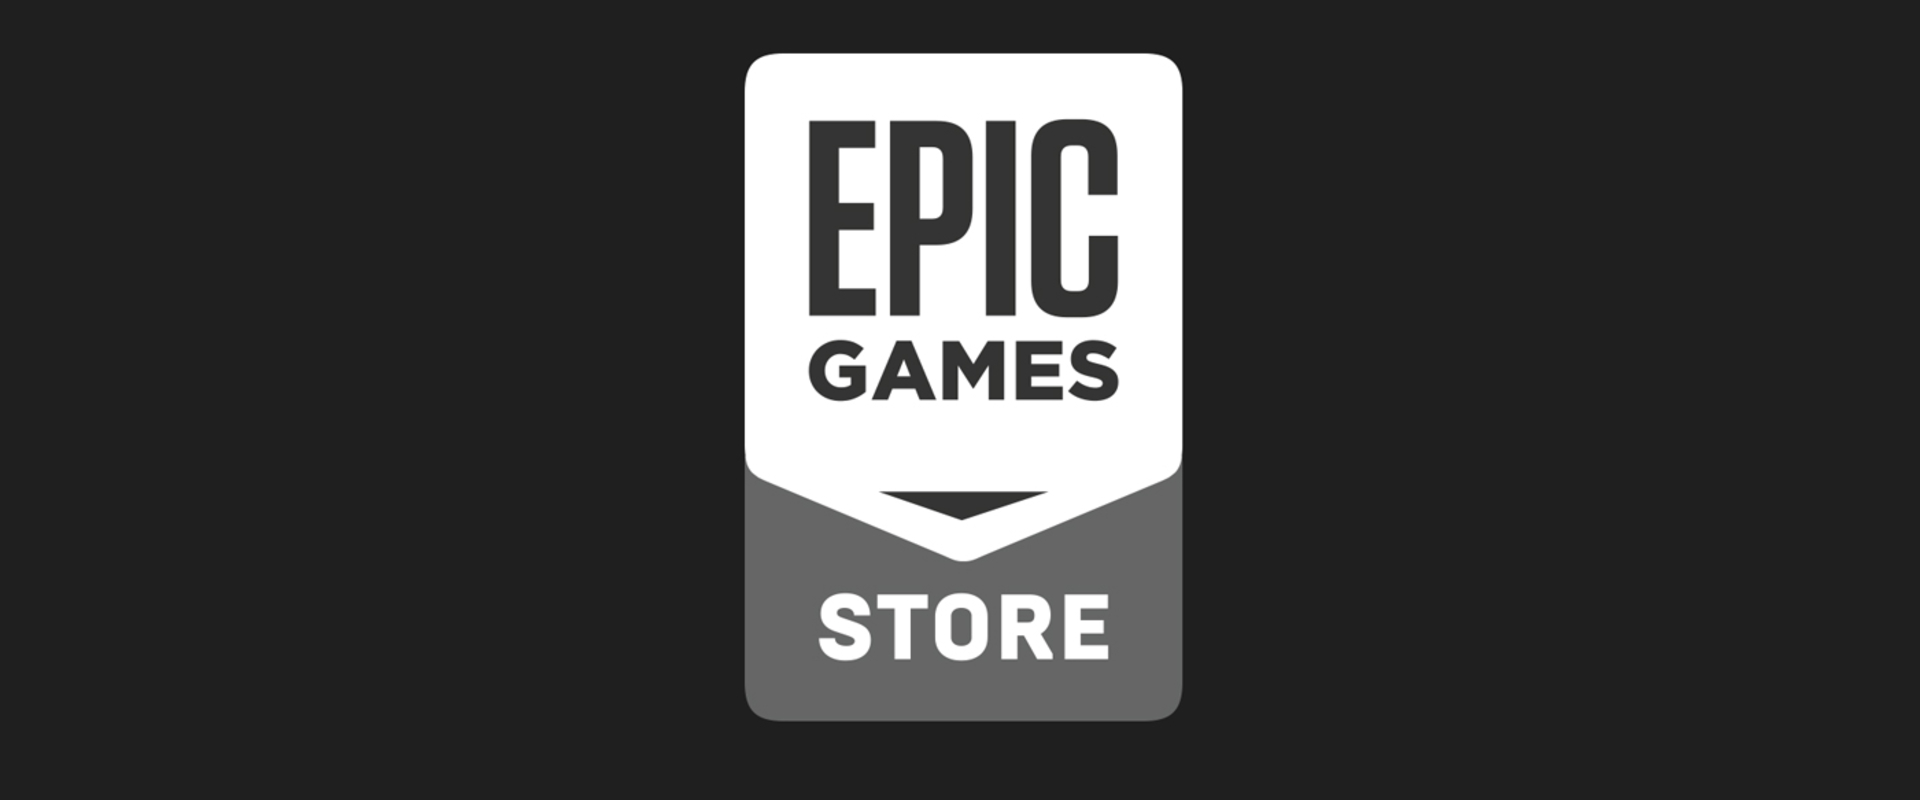 Az Epic Games tovább bővül, hamarosan megnyitják a saját játék store-jukat